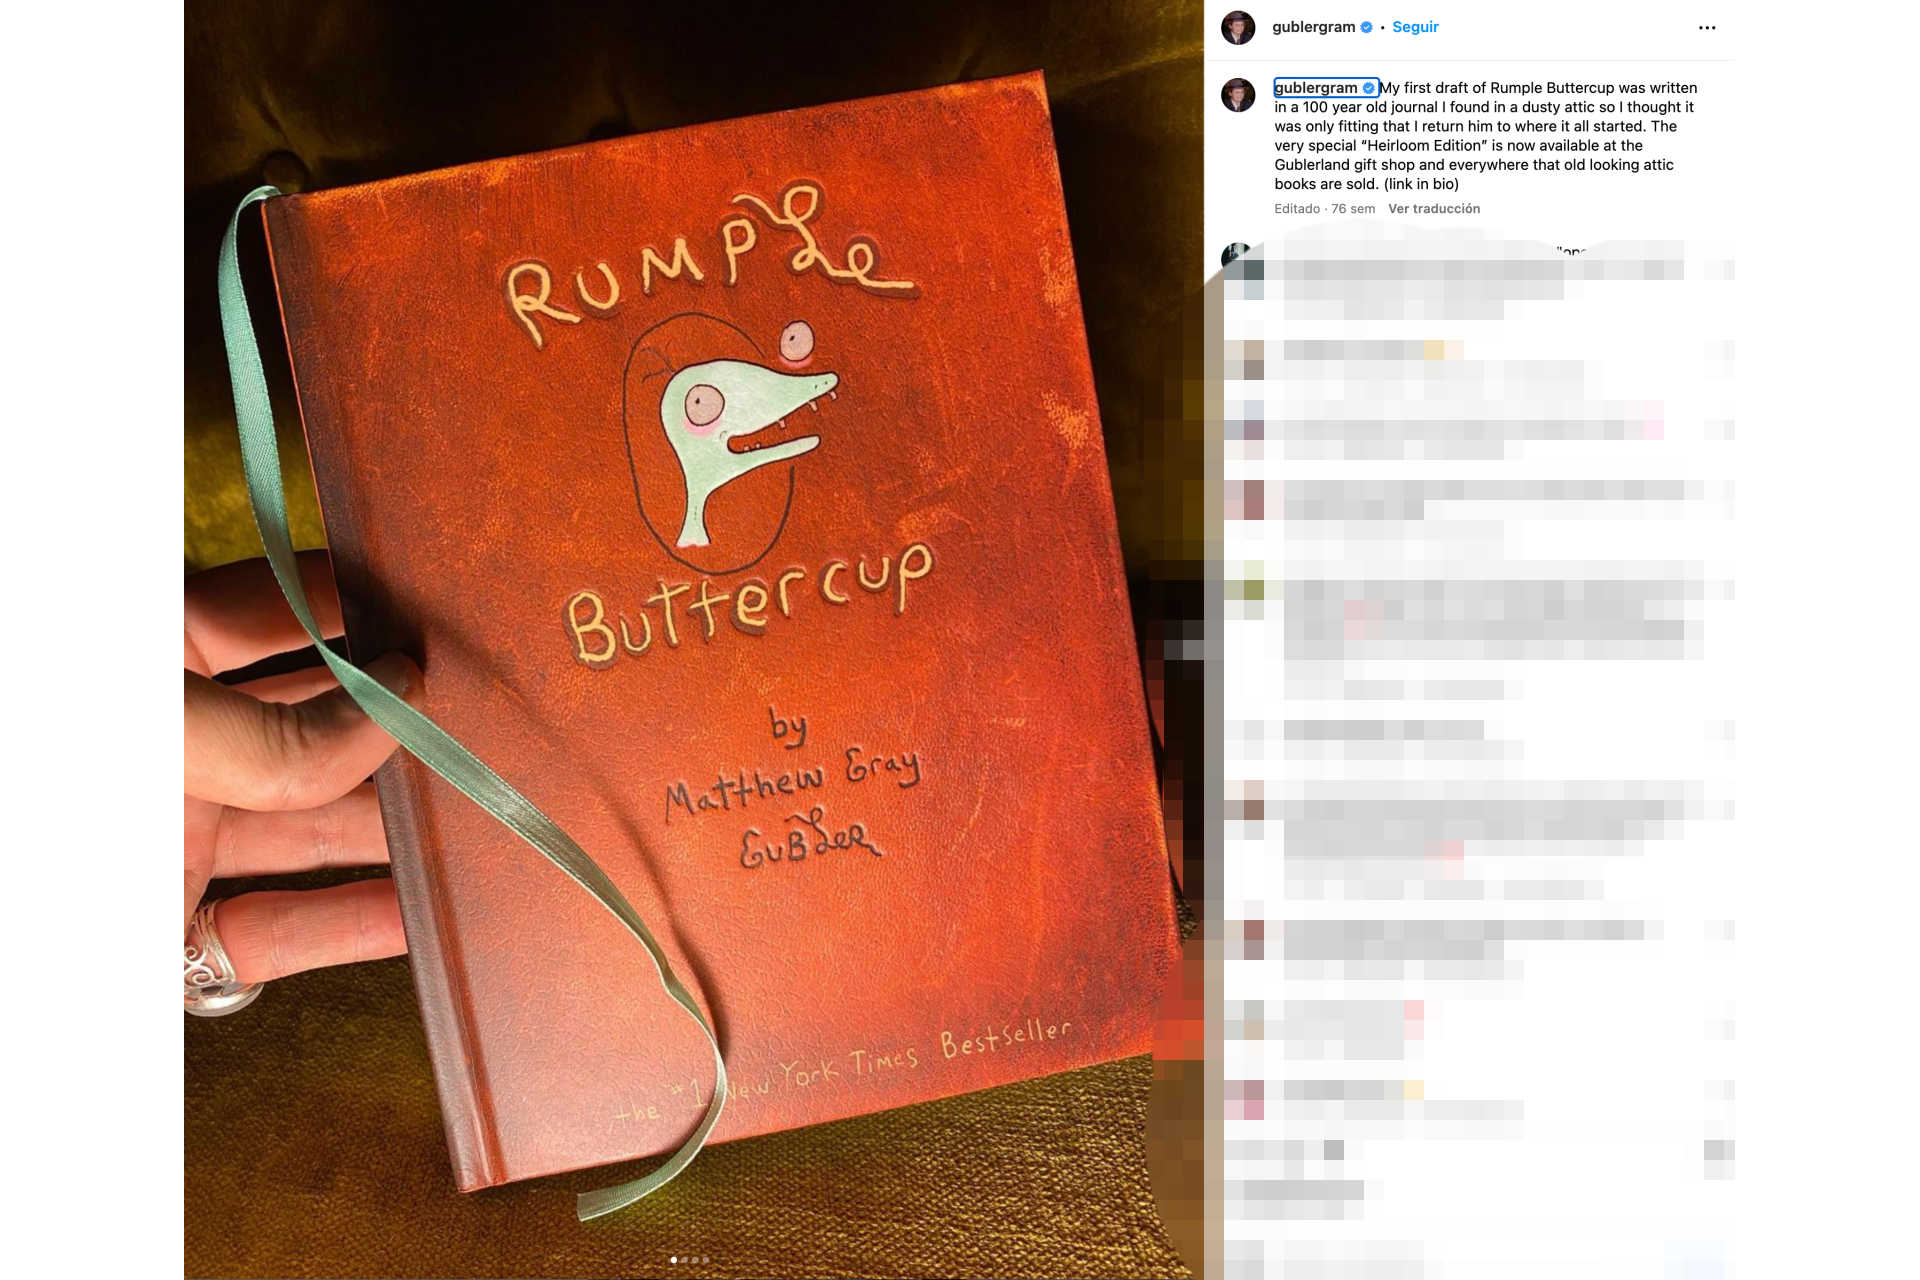 <p>Ma Matthew Gray Gubler trova anche il tempo di pubblicare libri per bambini. Il suo primo lavoro, intitolato "Rumple Buttercup: A Story of Bananas, Belonging and Being Yourself", è stato pubblicato nel 2019, quando era ancora in onda "Criminal Minds".</p> <p>Foto: Instagram - @gublergram</p>